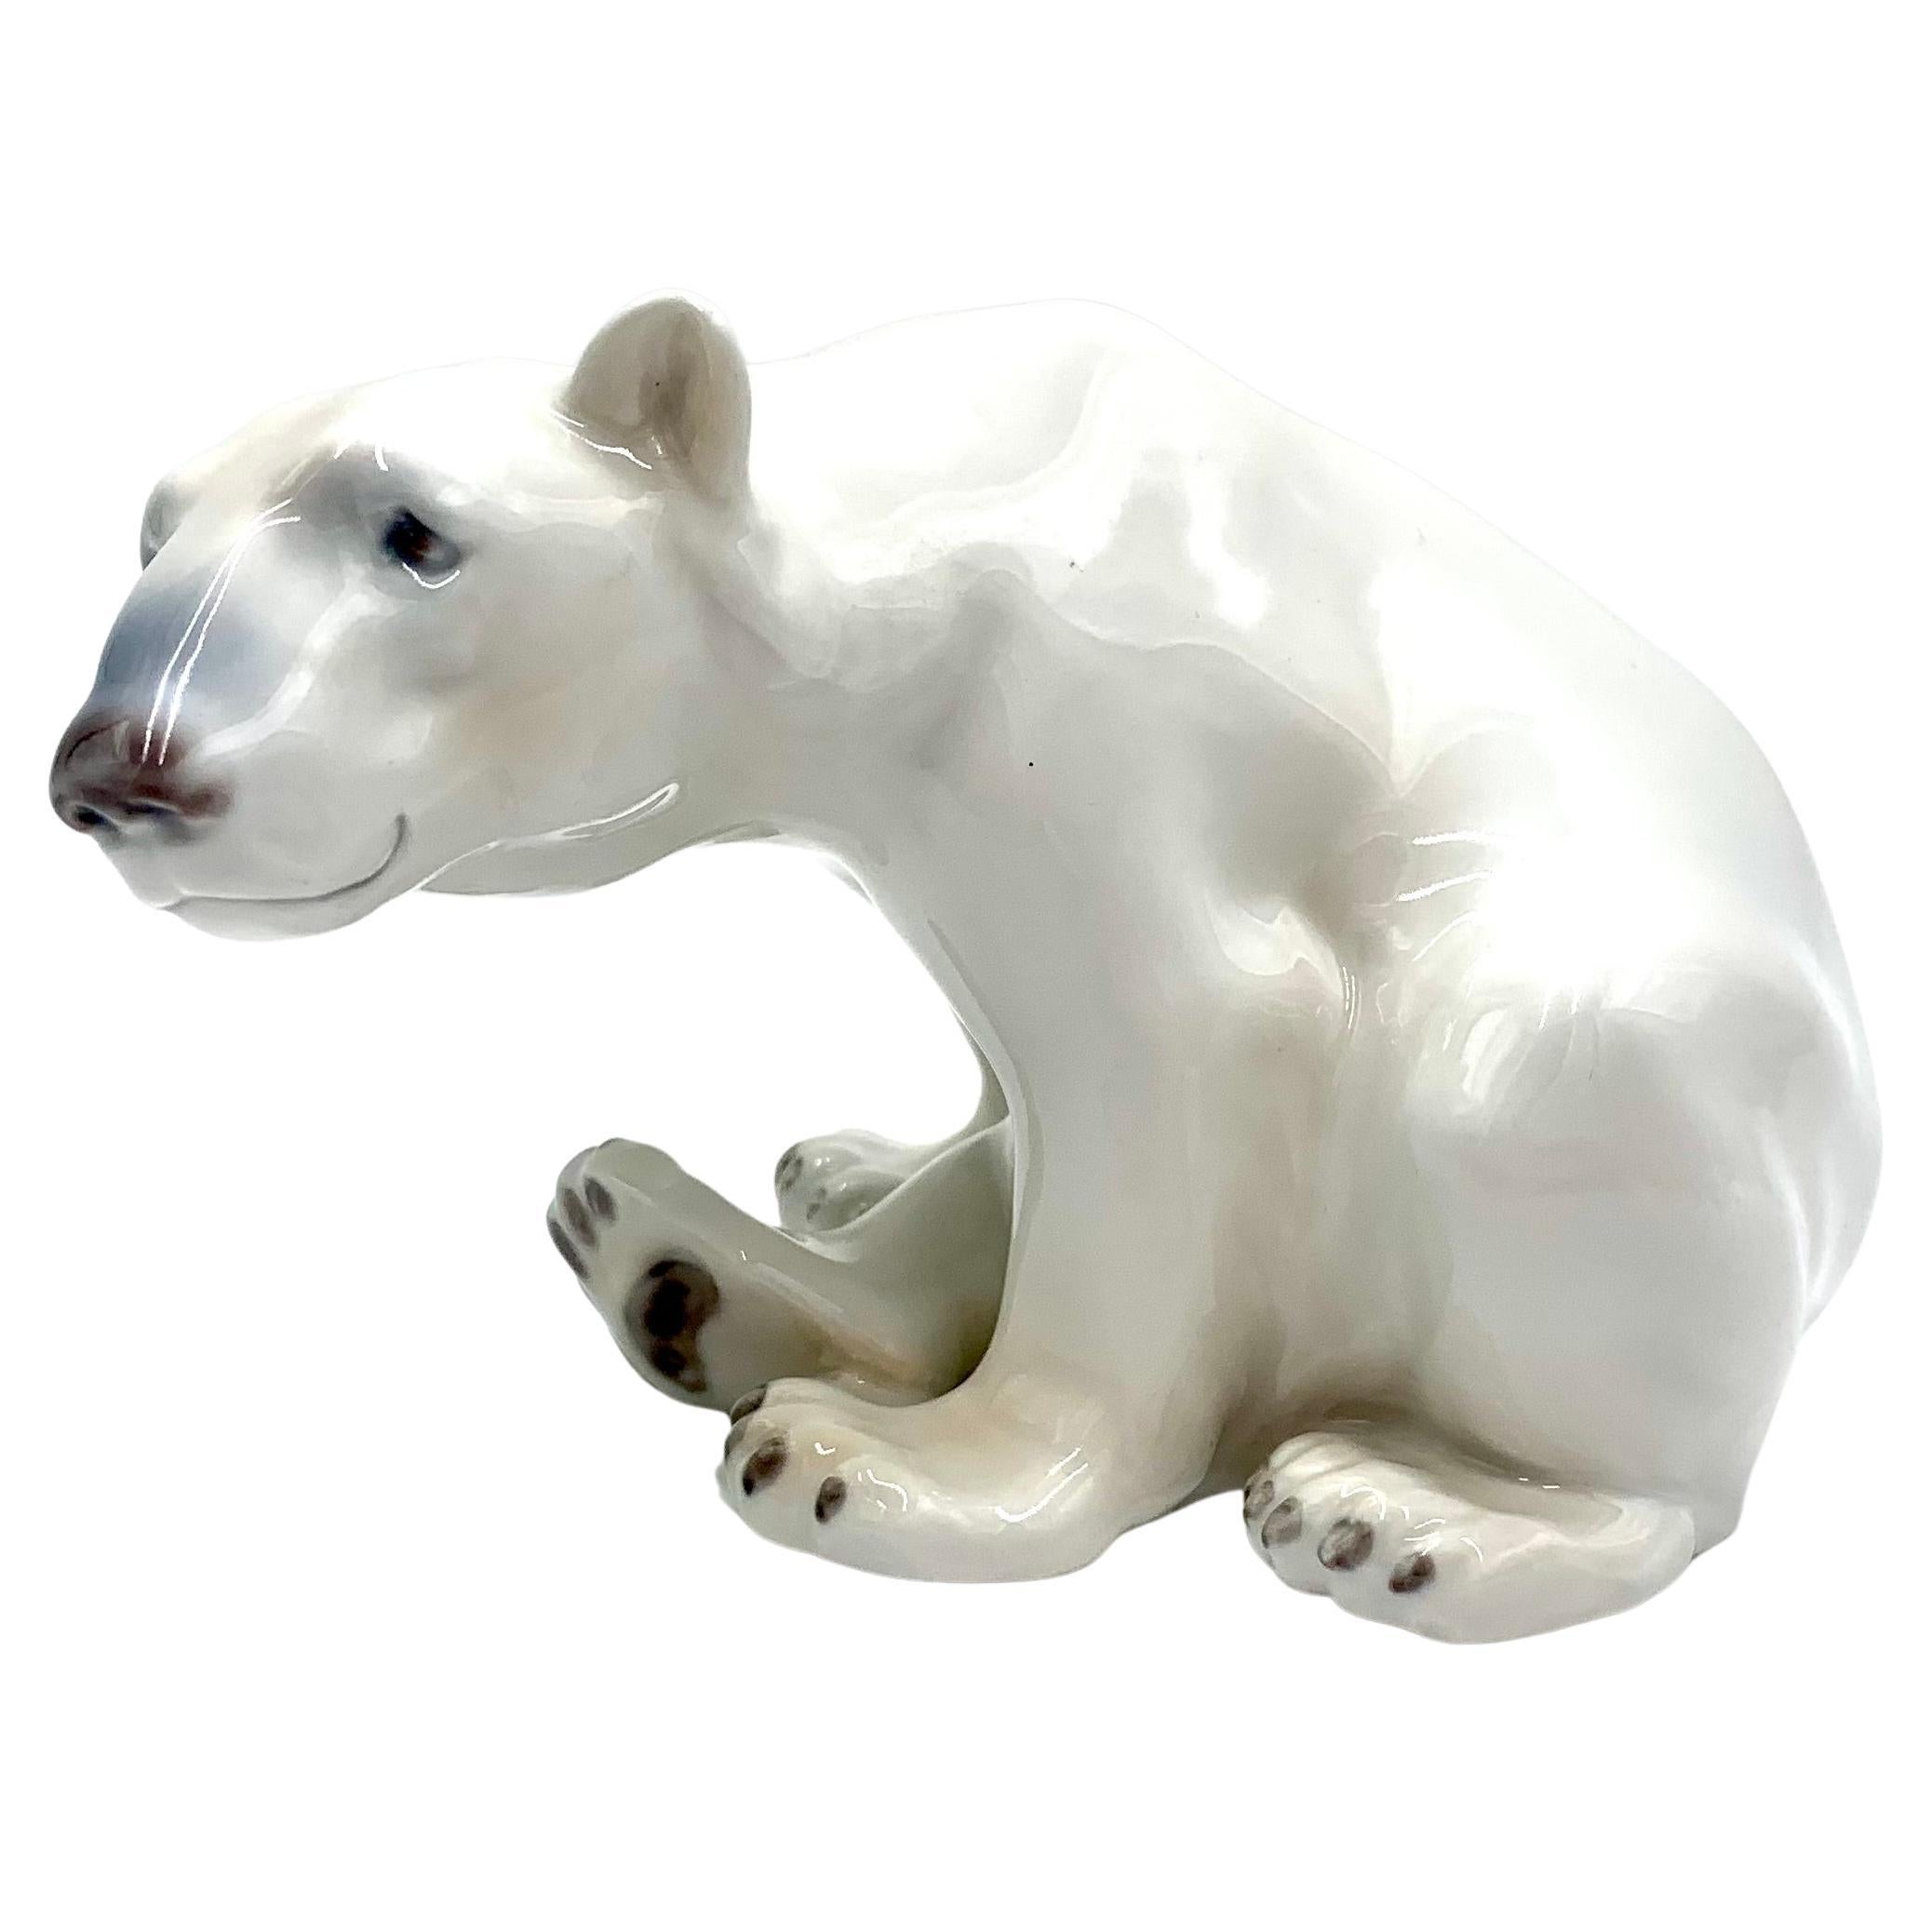 Porcelain Figurine of a Polar Bear, Bing & Grondahl, Denmark, 1970s